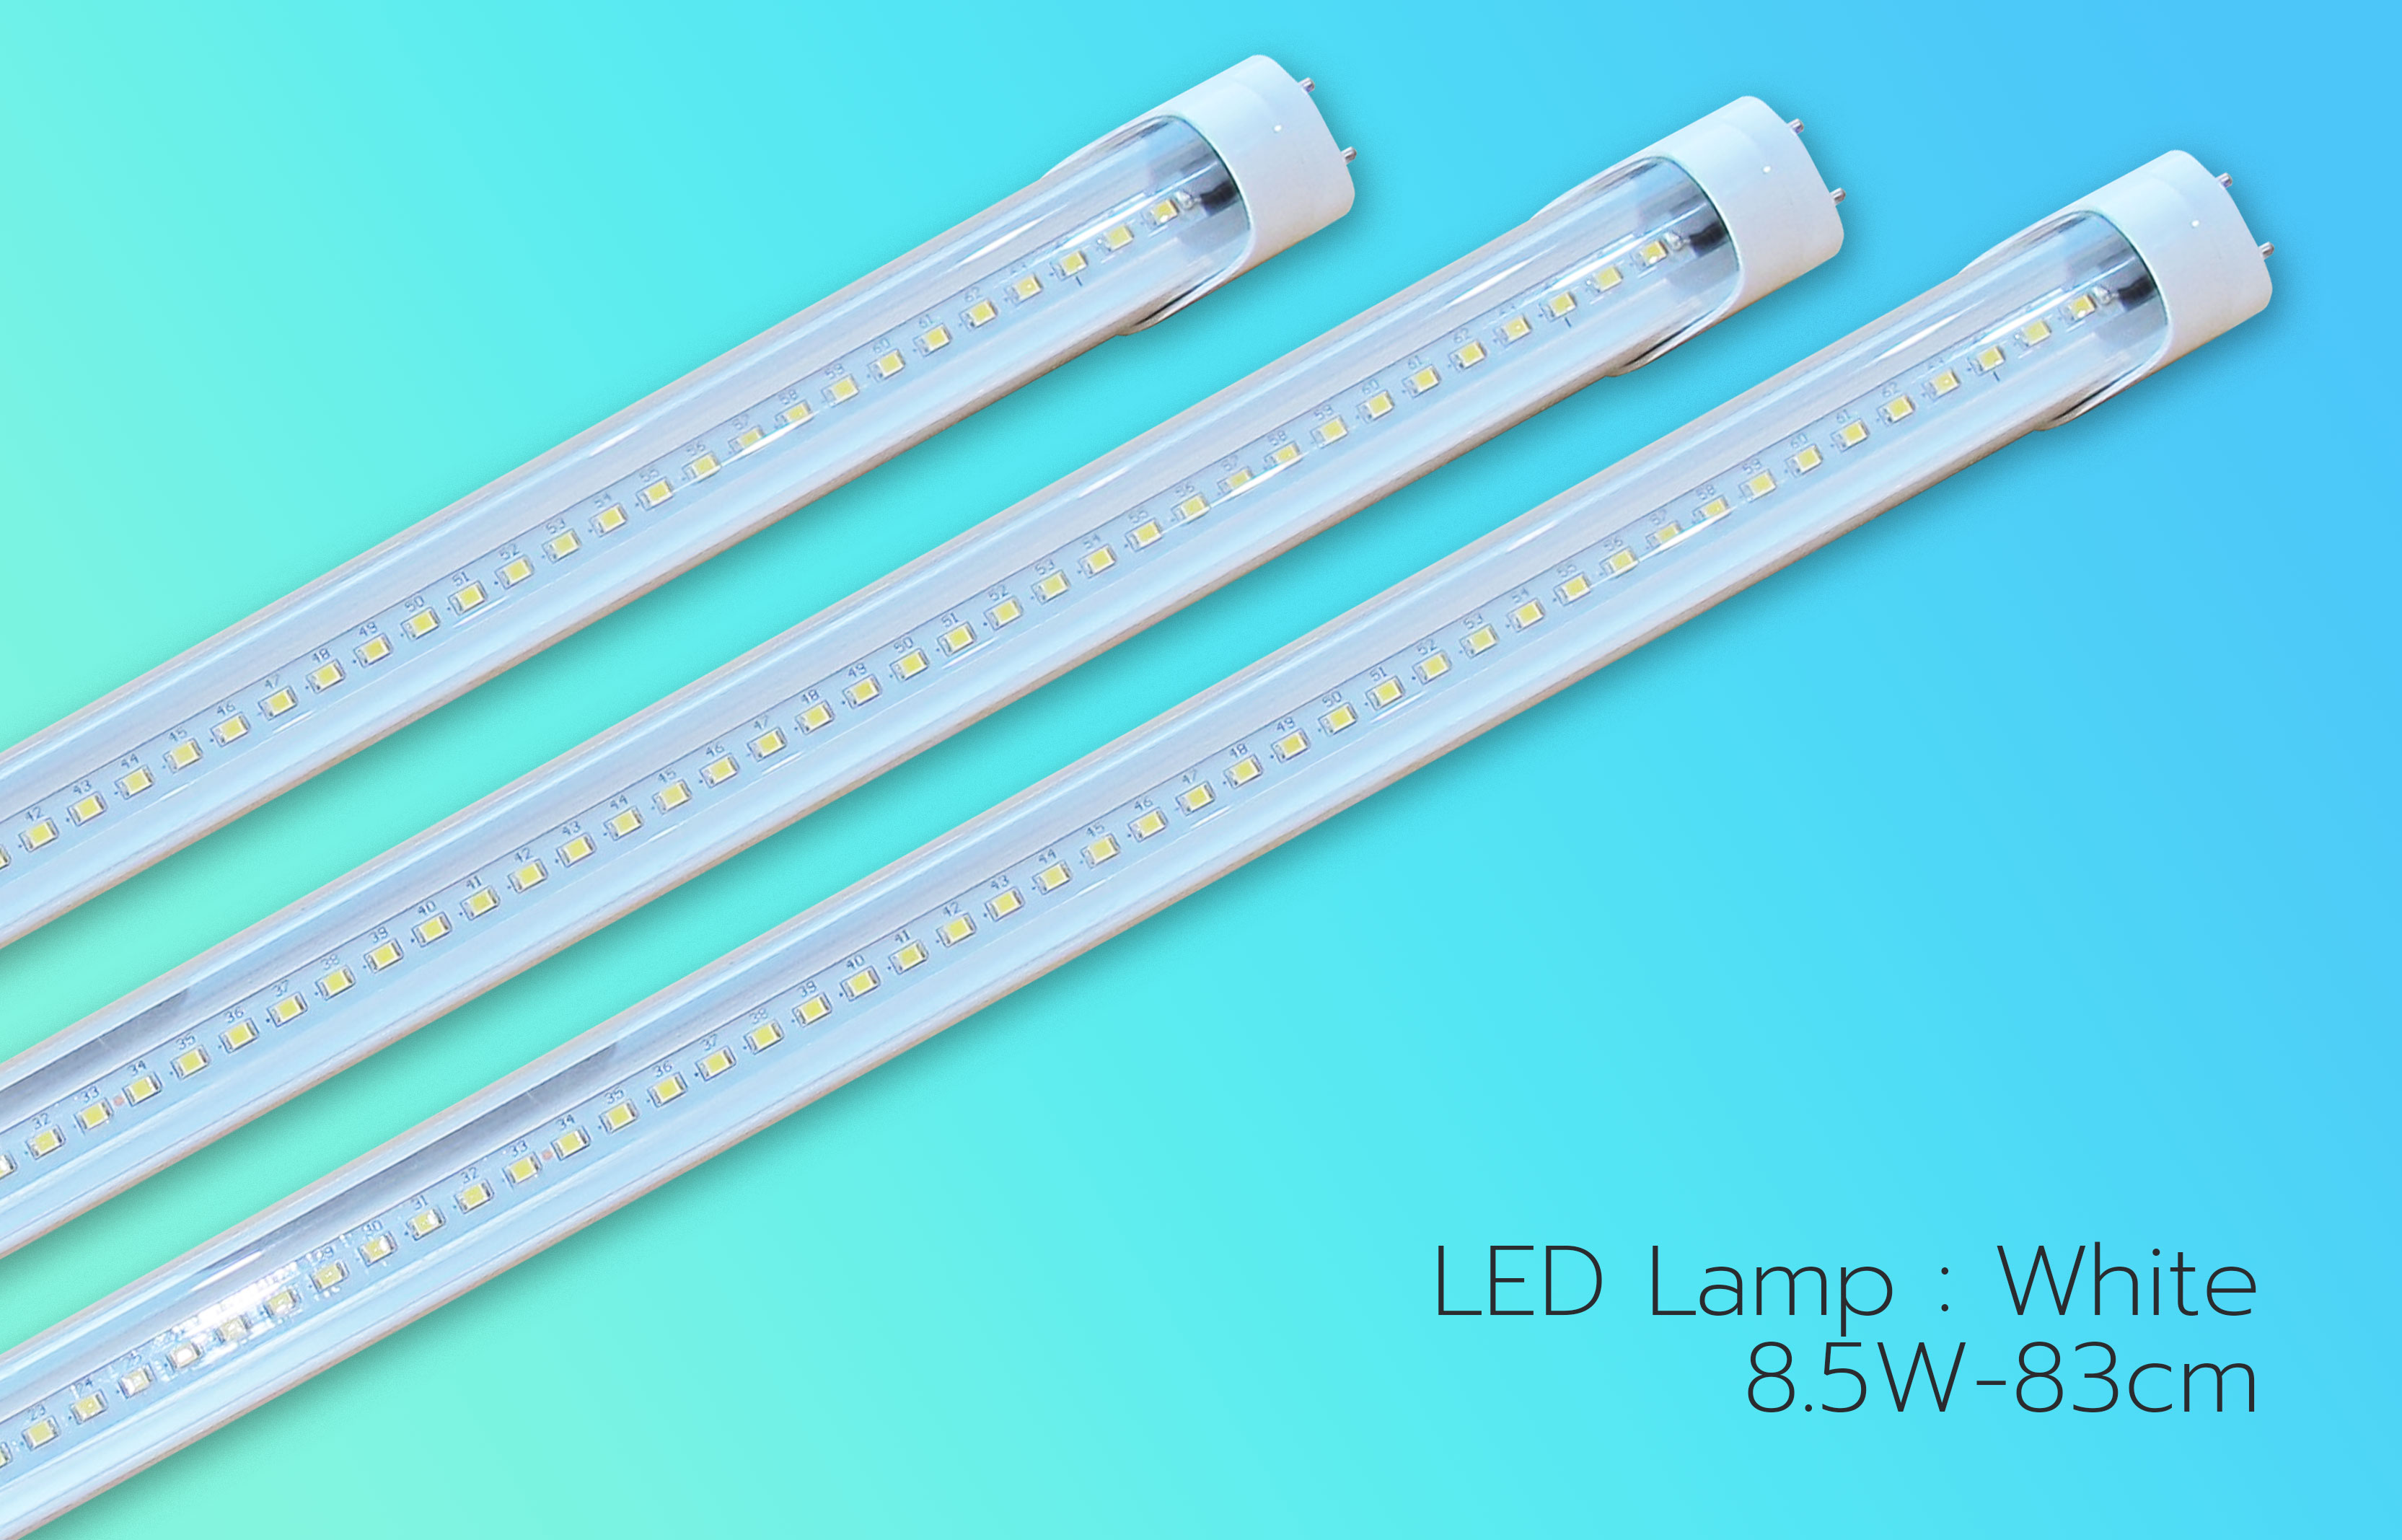 LED-Lamp-8.5W-83cm